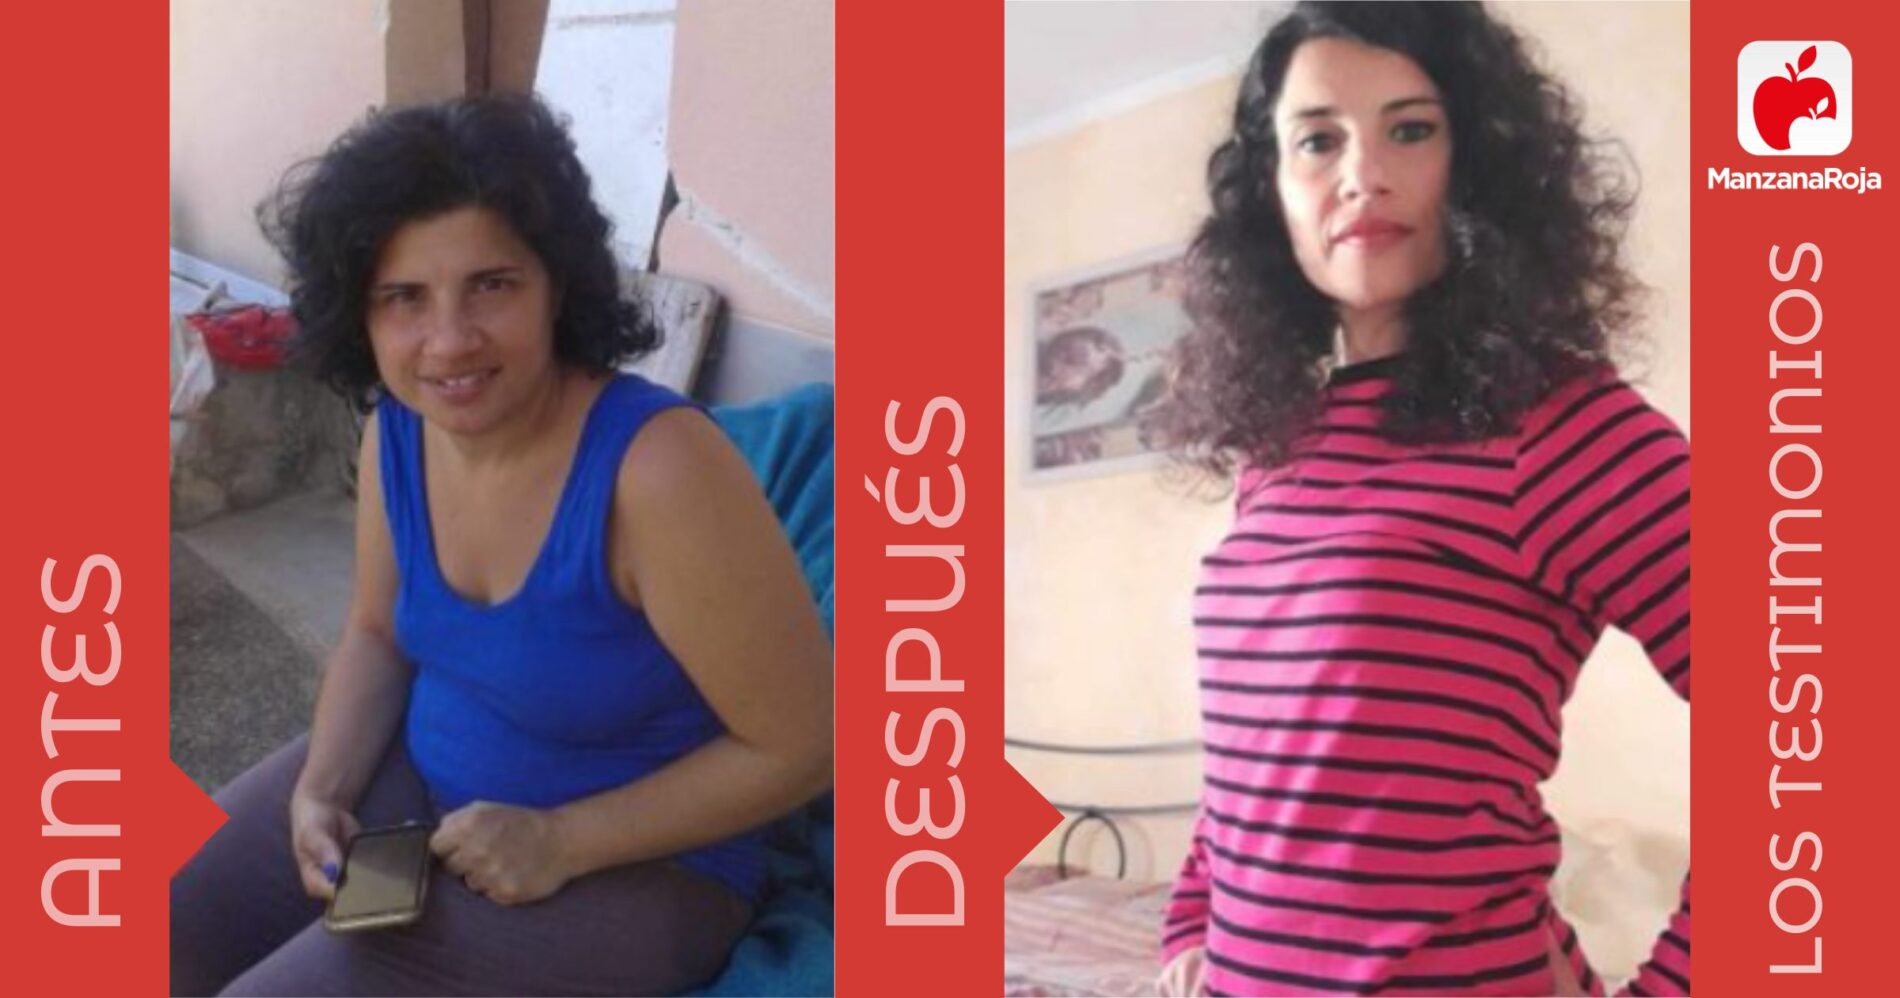 María antes y después de haber adelgazado 15 kilos con la app Manzana Roja